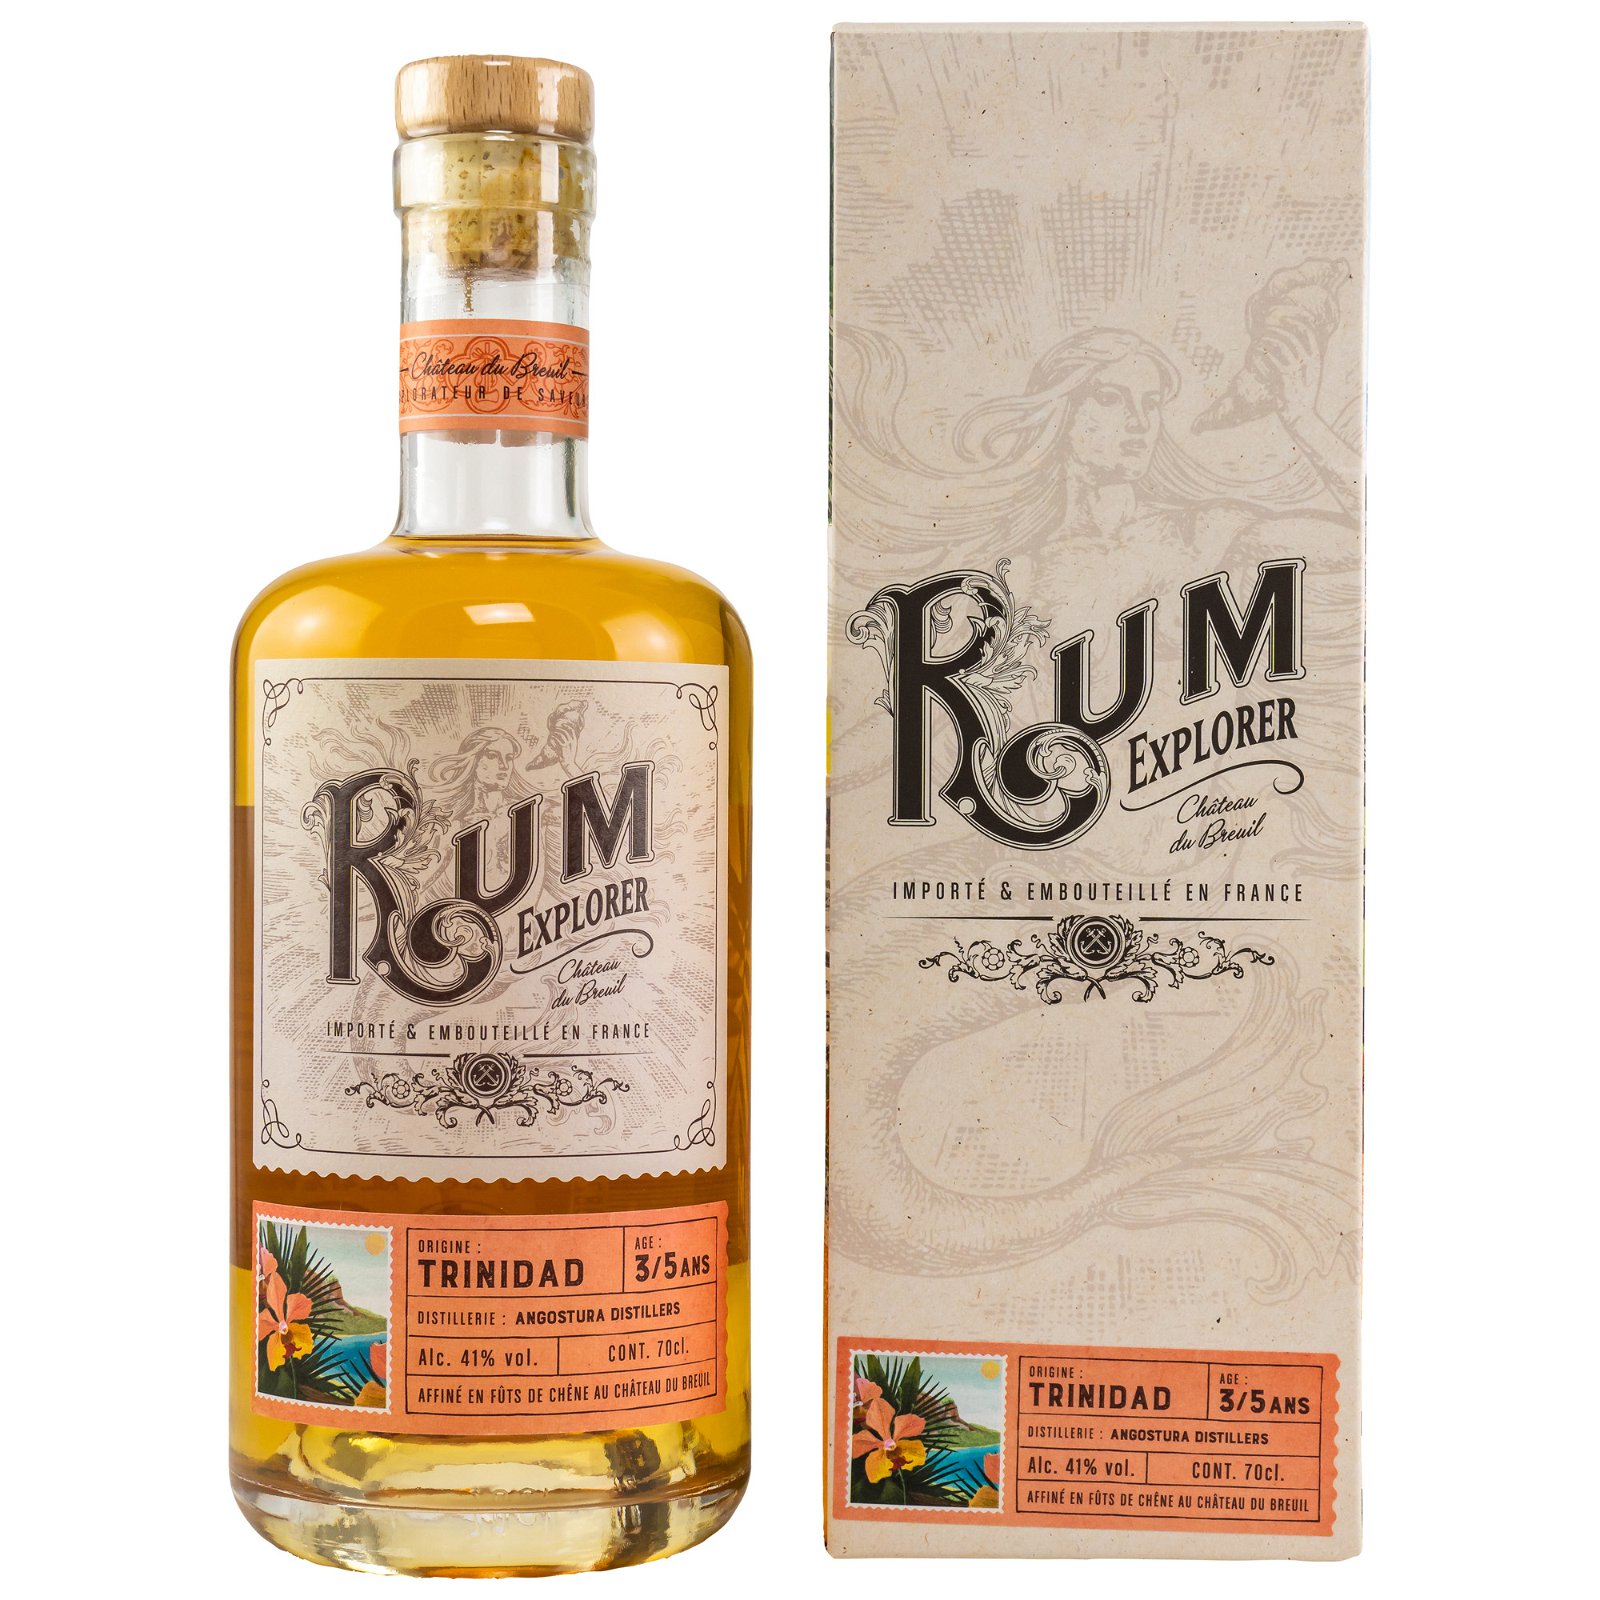 Rum Explorer Angostura Distillers Trinidad Rum